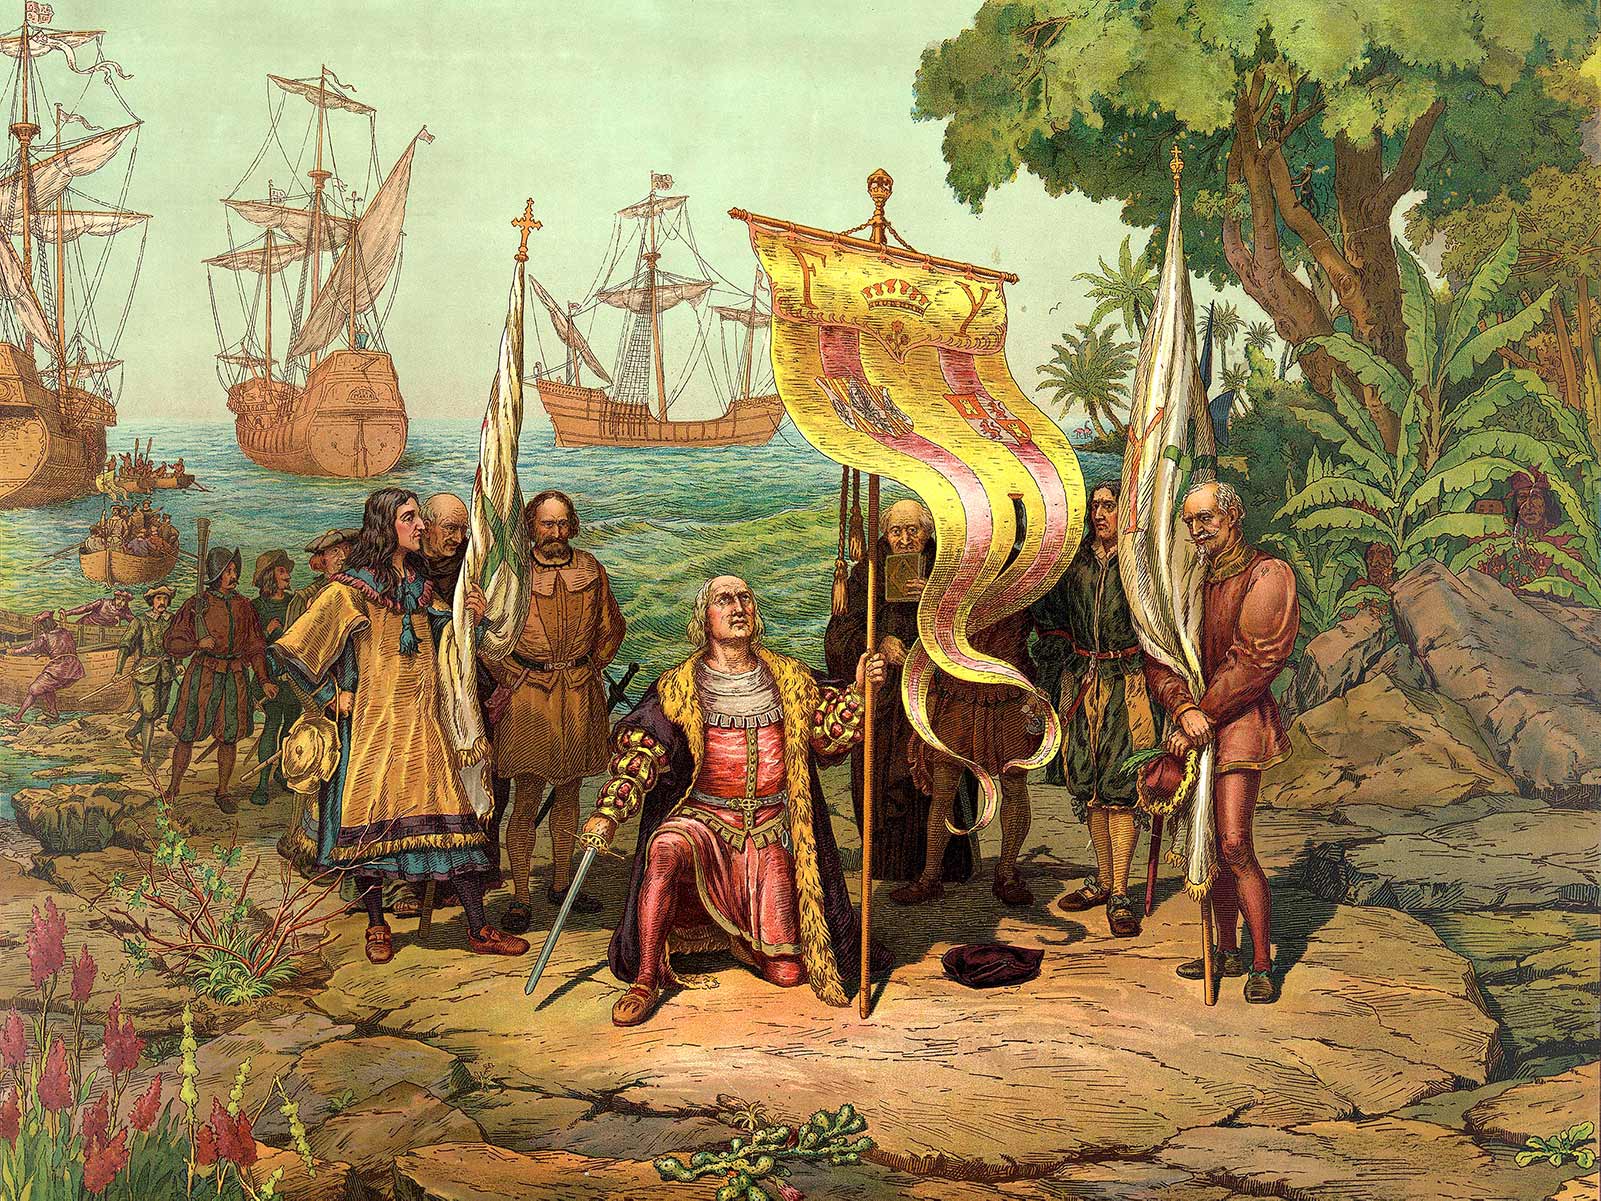 Columbus upptäckte Amerika år 1492. Dock hade vikingarna varit där tidigare, för att inte nämna urinvånarna.